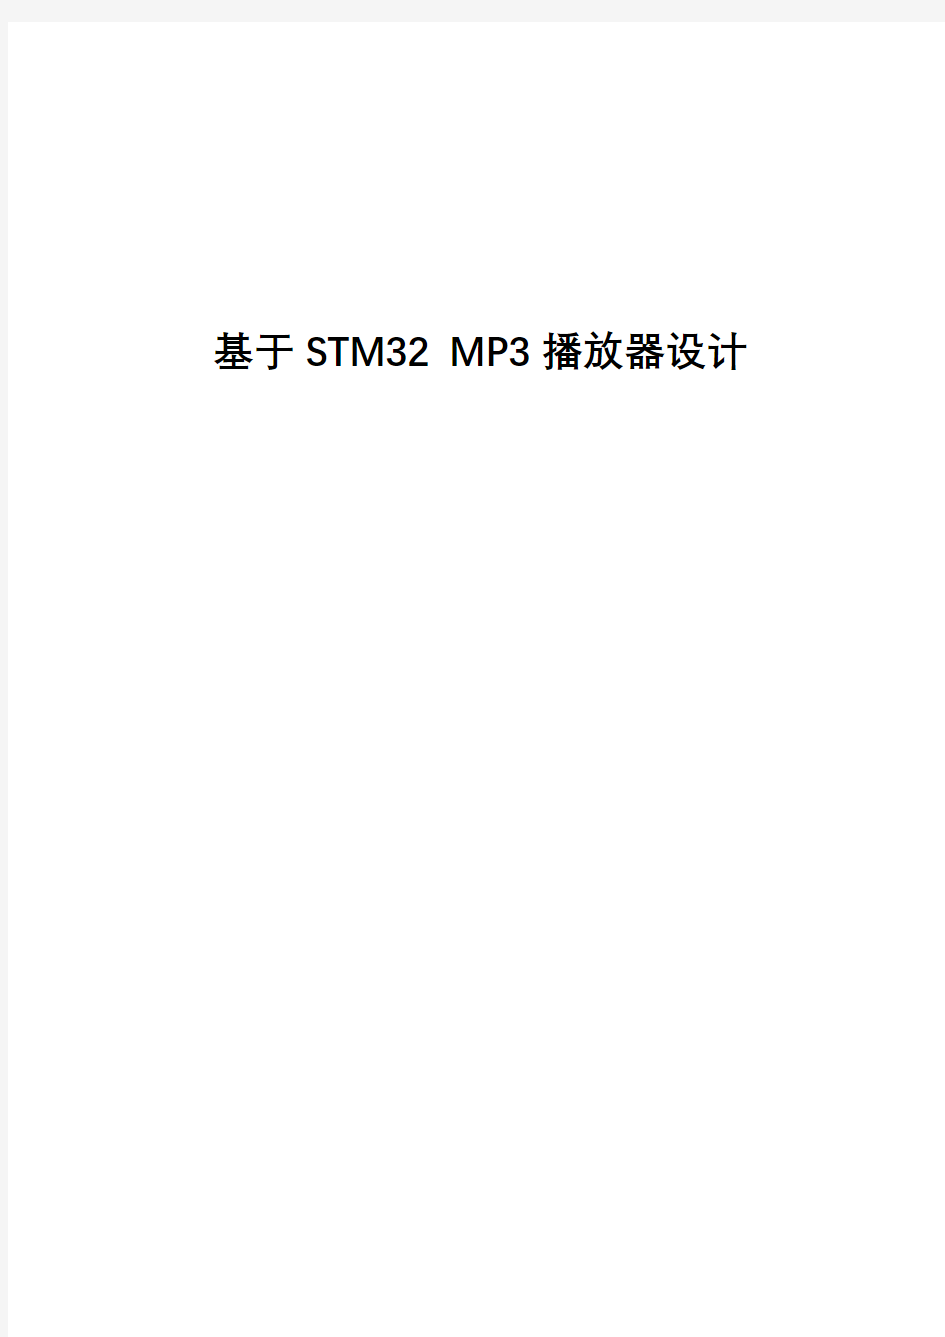 (完整版)基于STM32MP3播放器设计